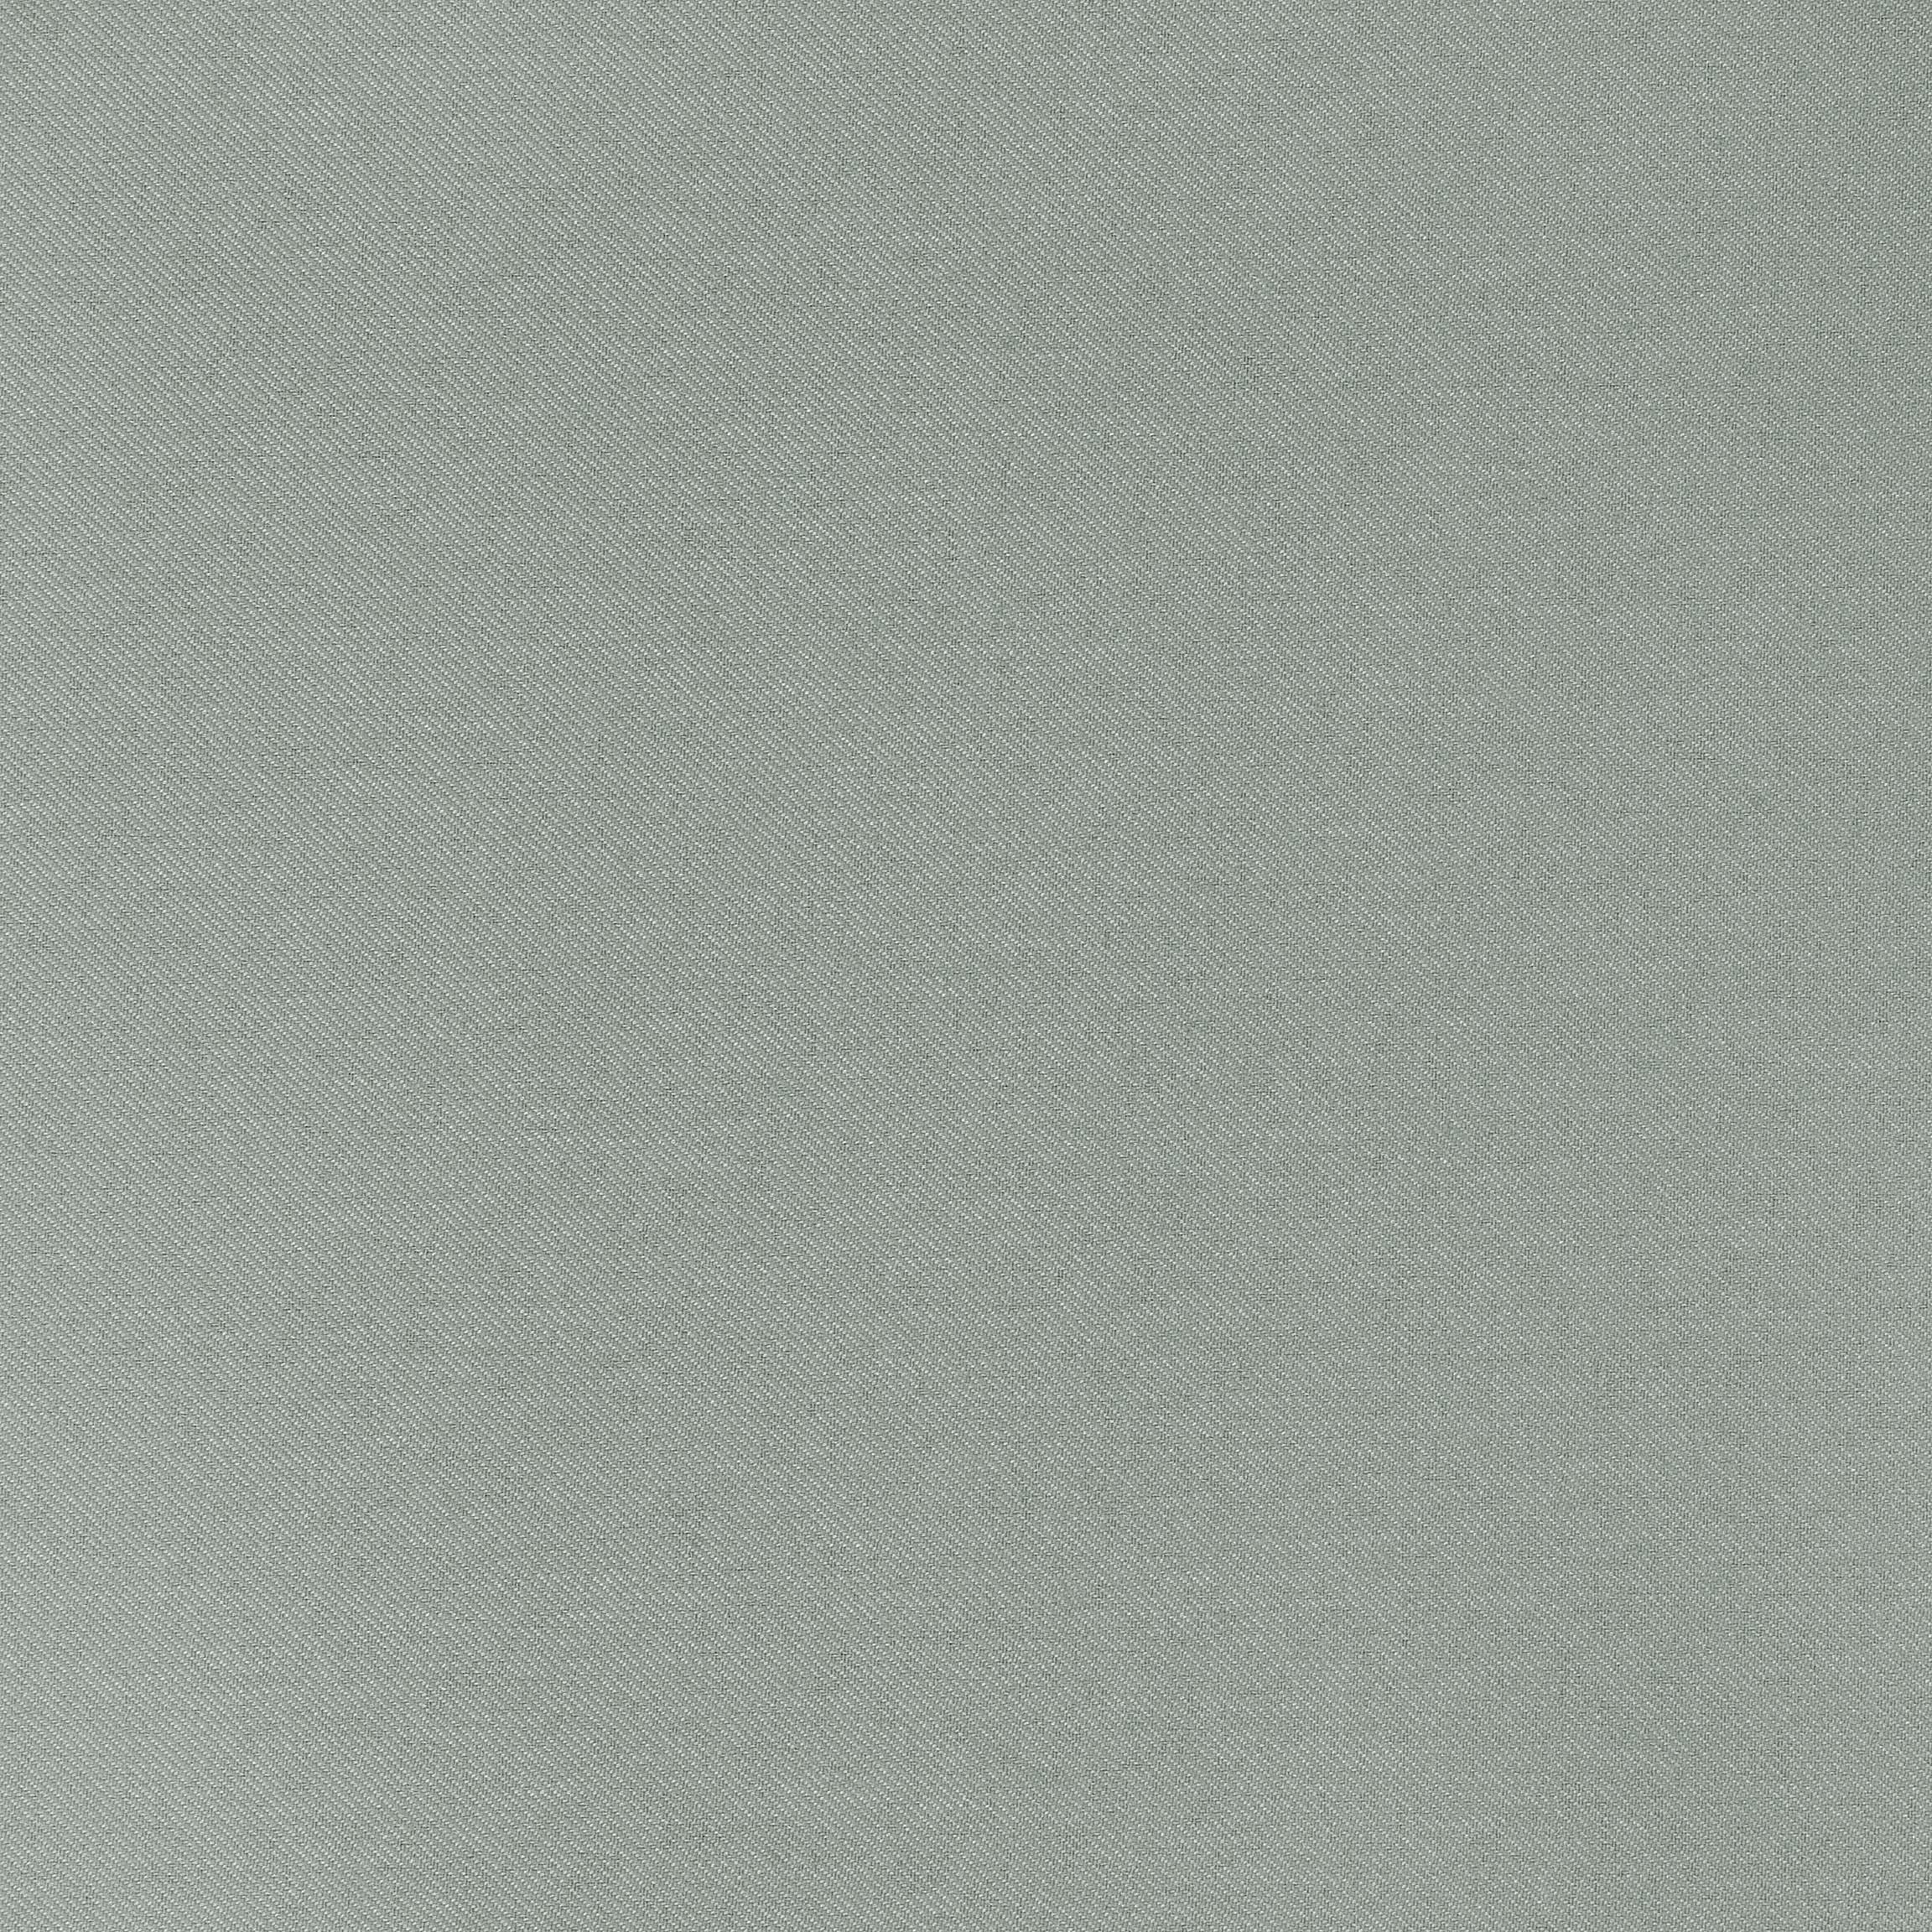  Портьерная ткань SETO GREY, ширина 280 см  - Фото